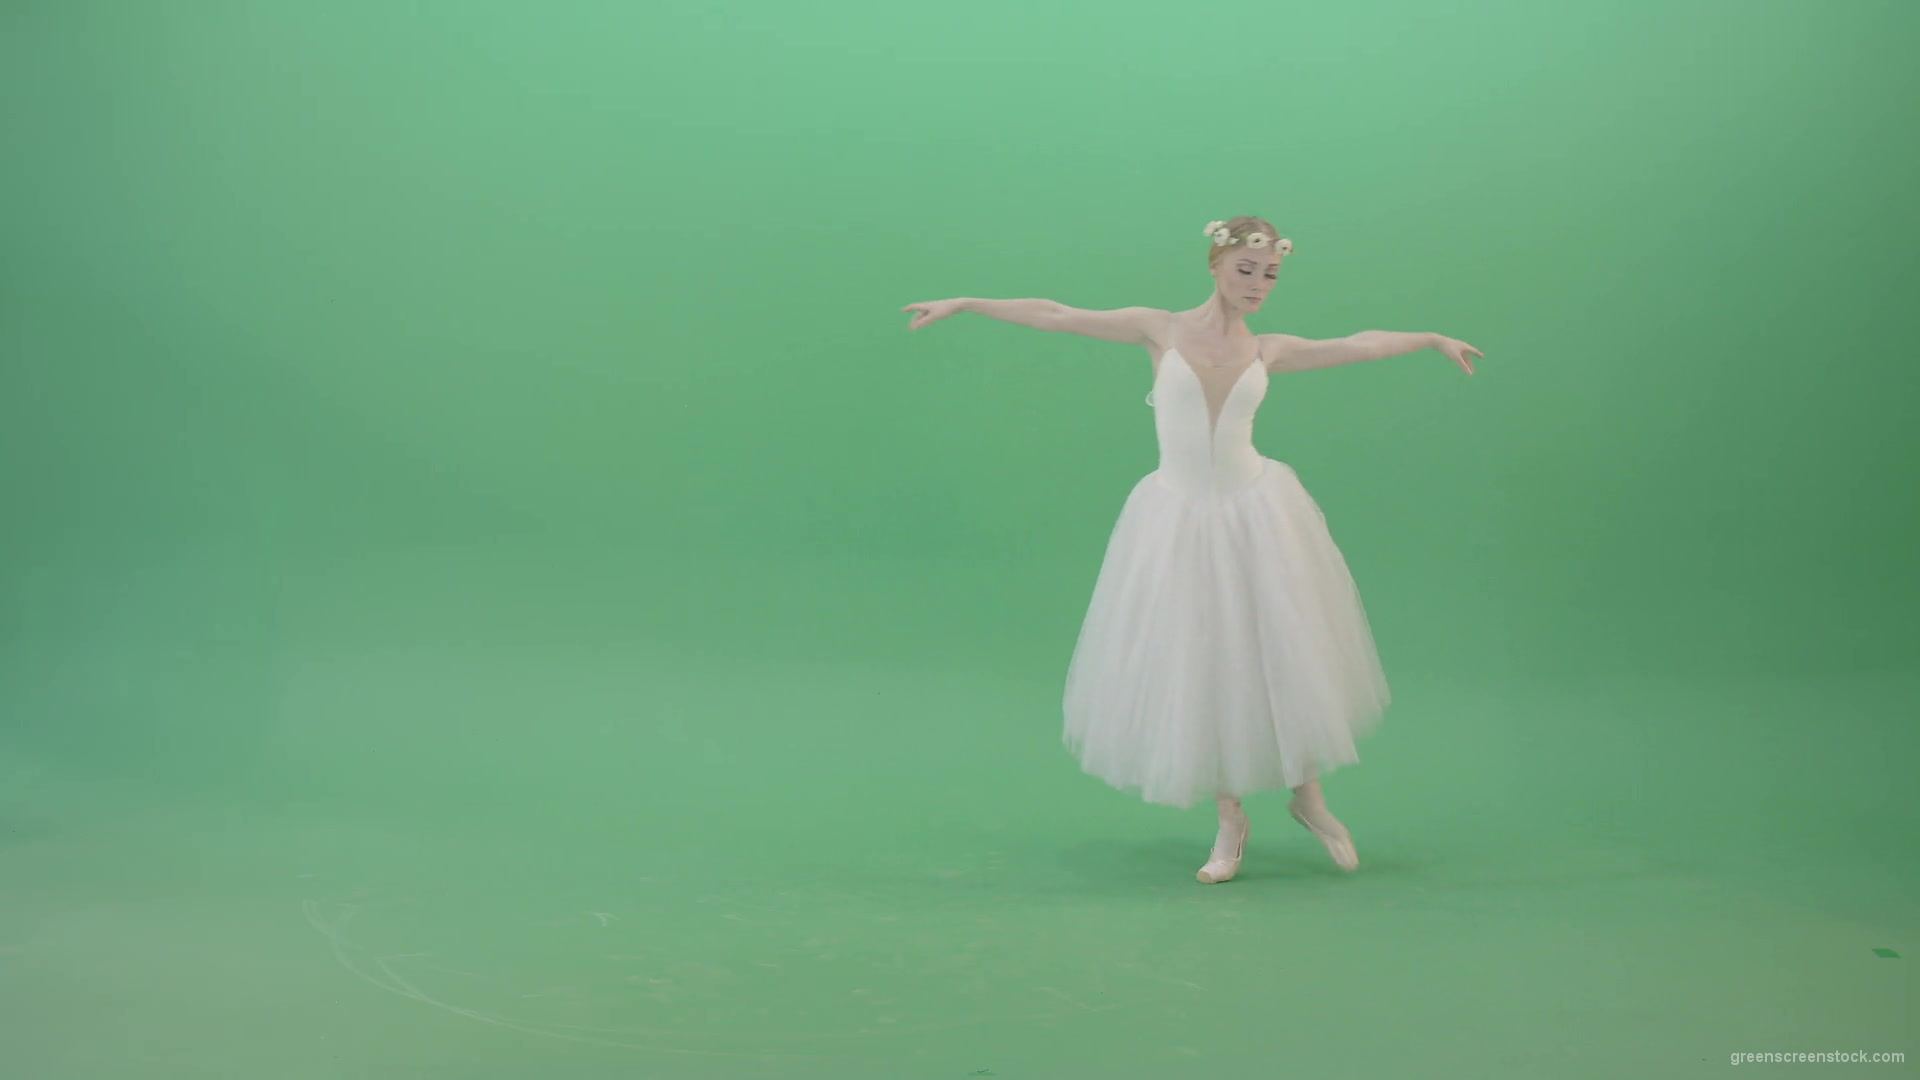 Elegant-Ballerina-Ballet-Girl-posing-for-Advertising-packshot-4K-Video-Footage-1920_005 Green Screen Stock